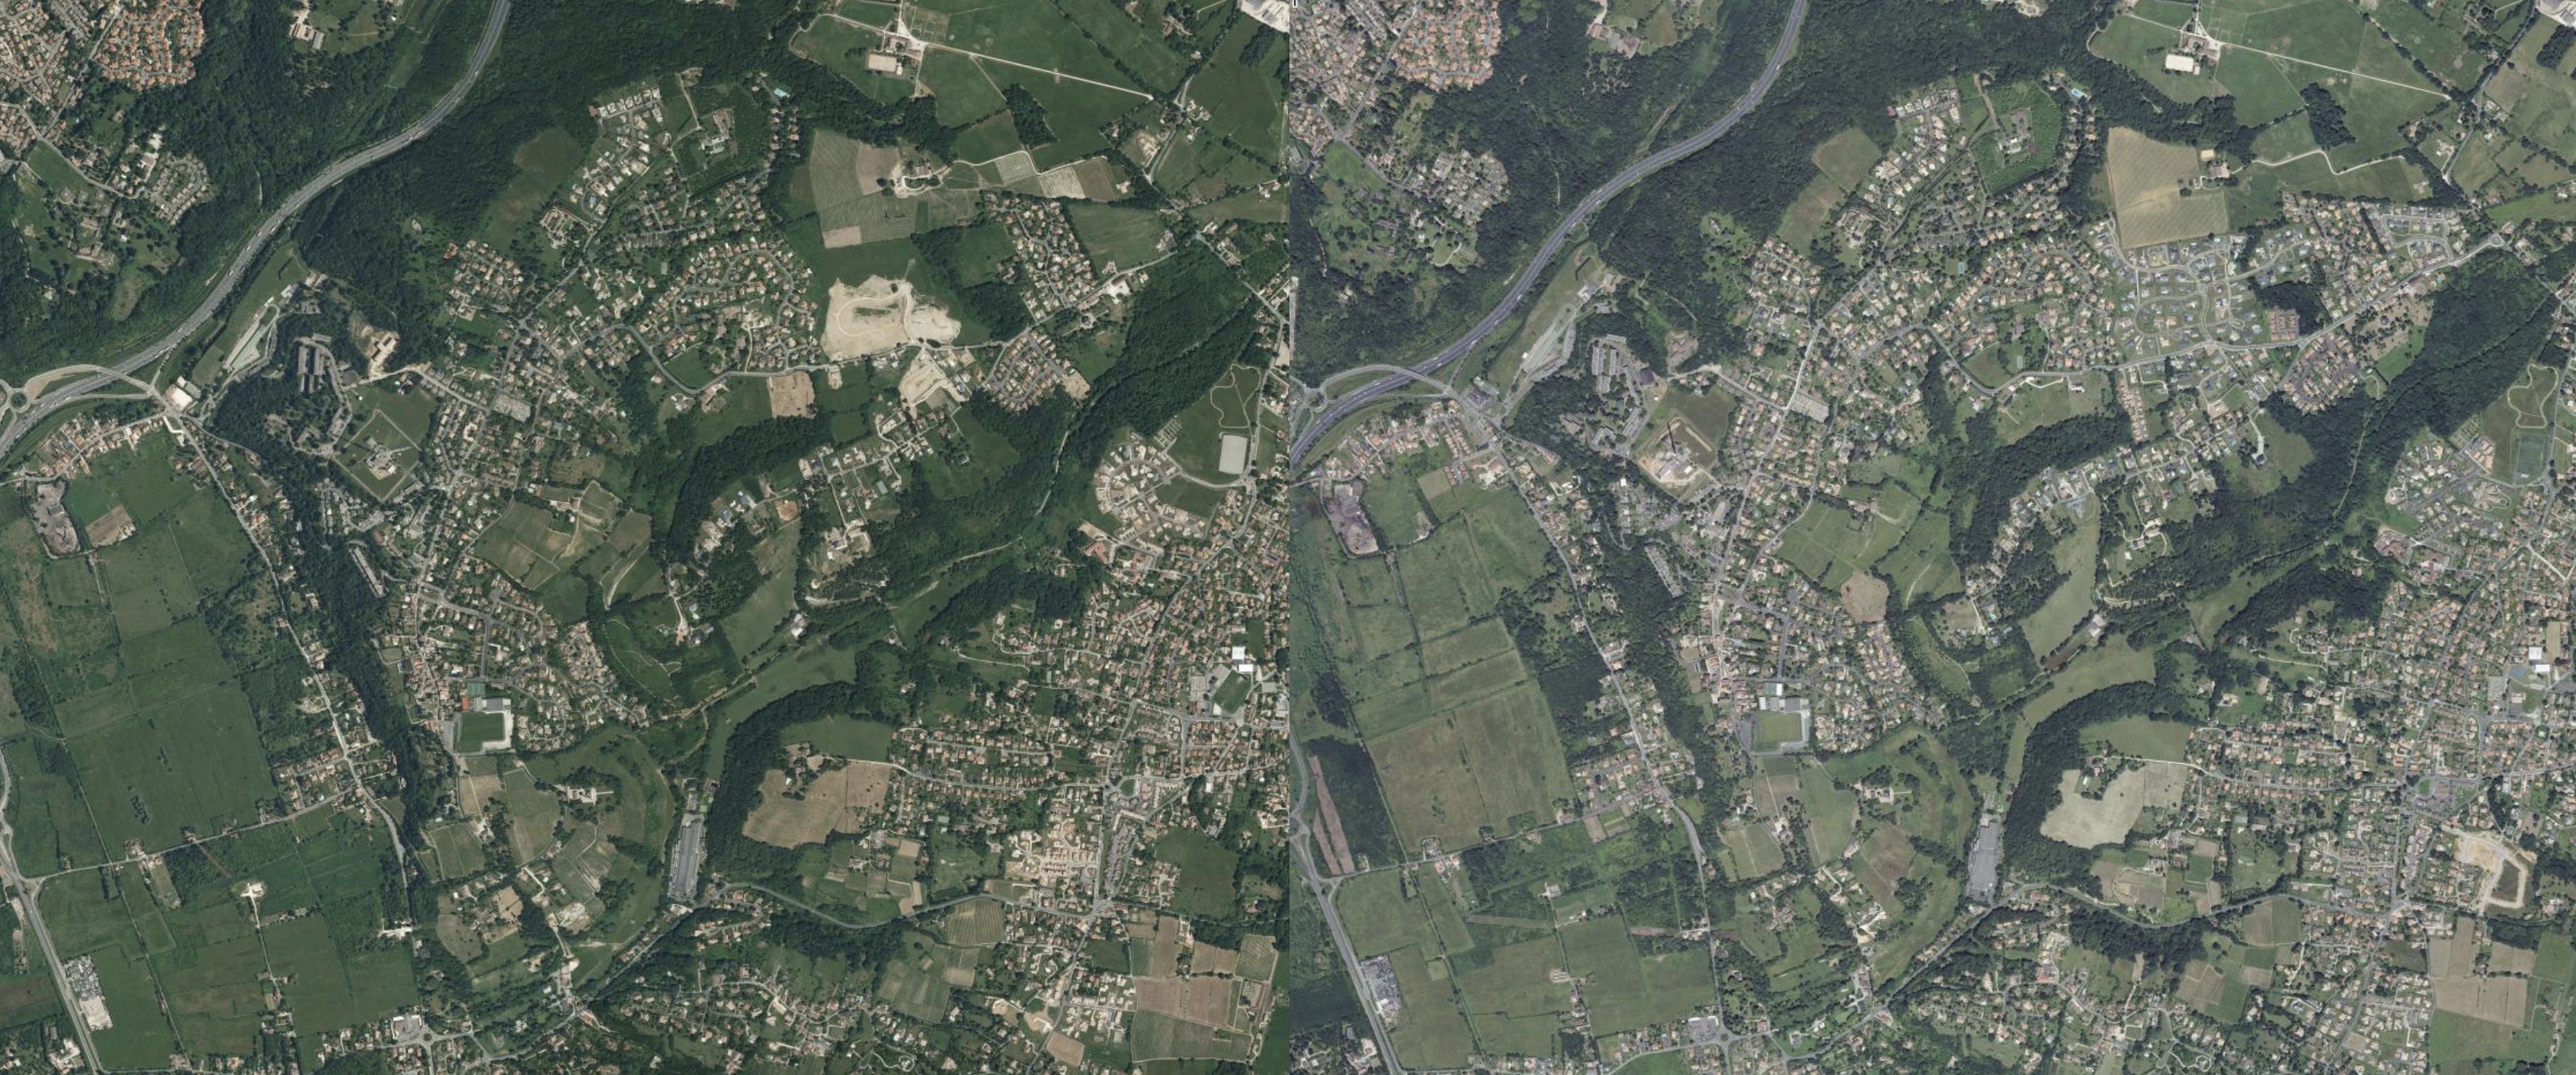 Comparaison de photos aériennes de 2006-2010 avec 2018